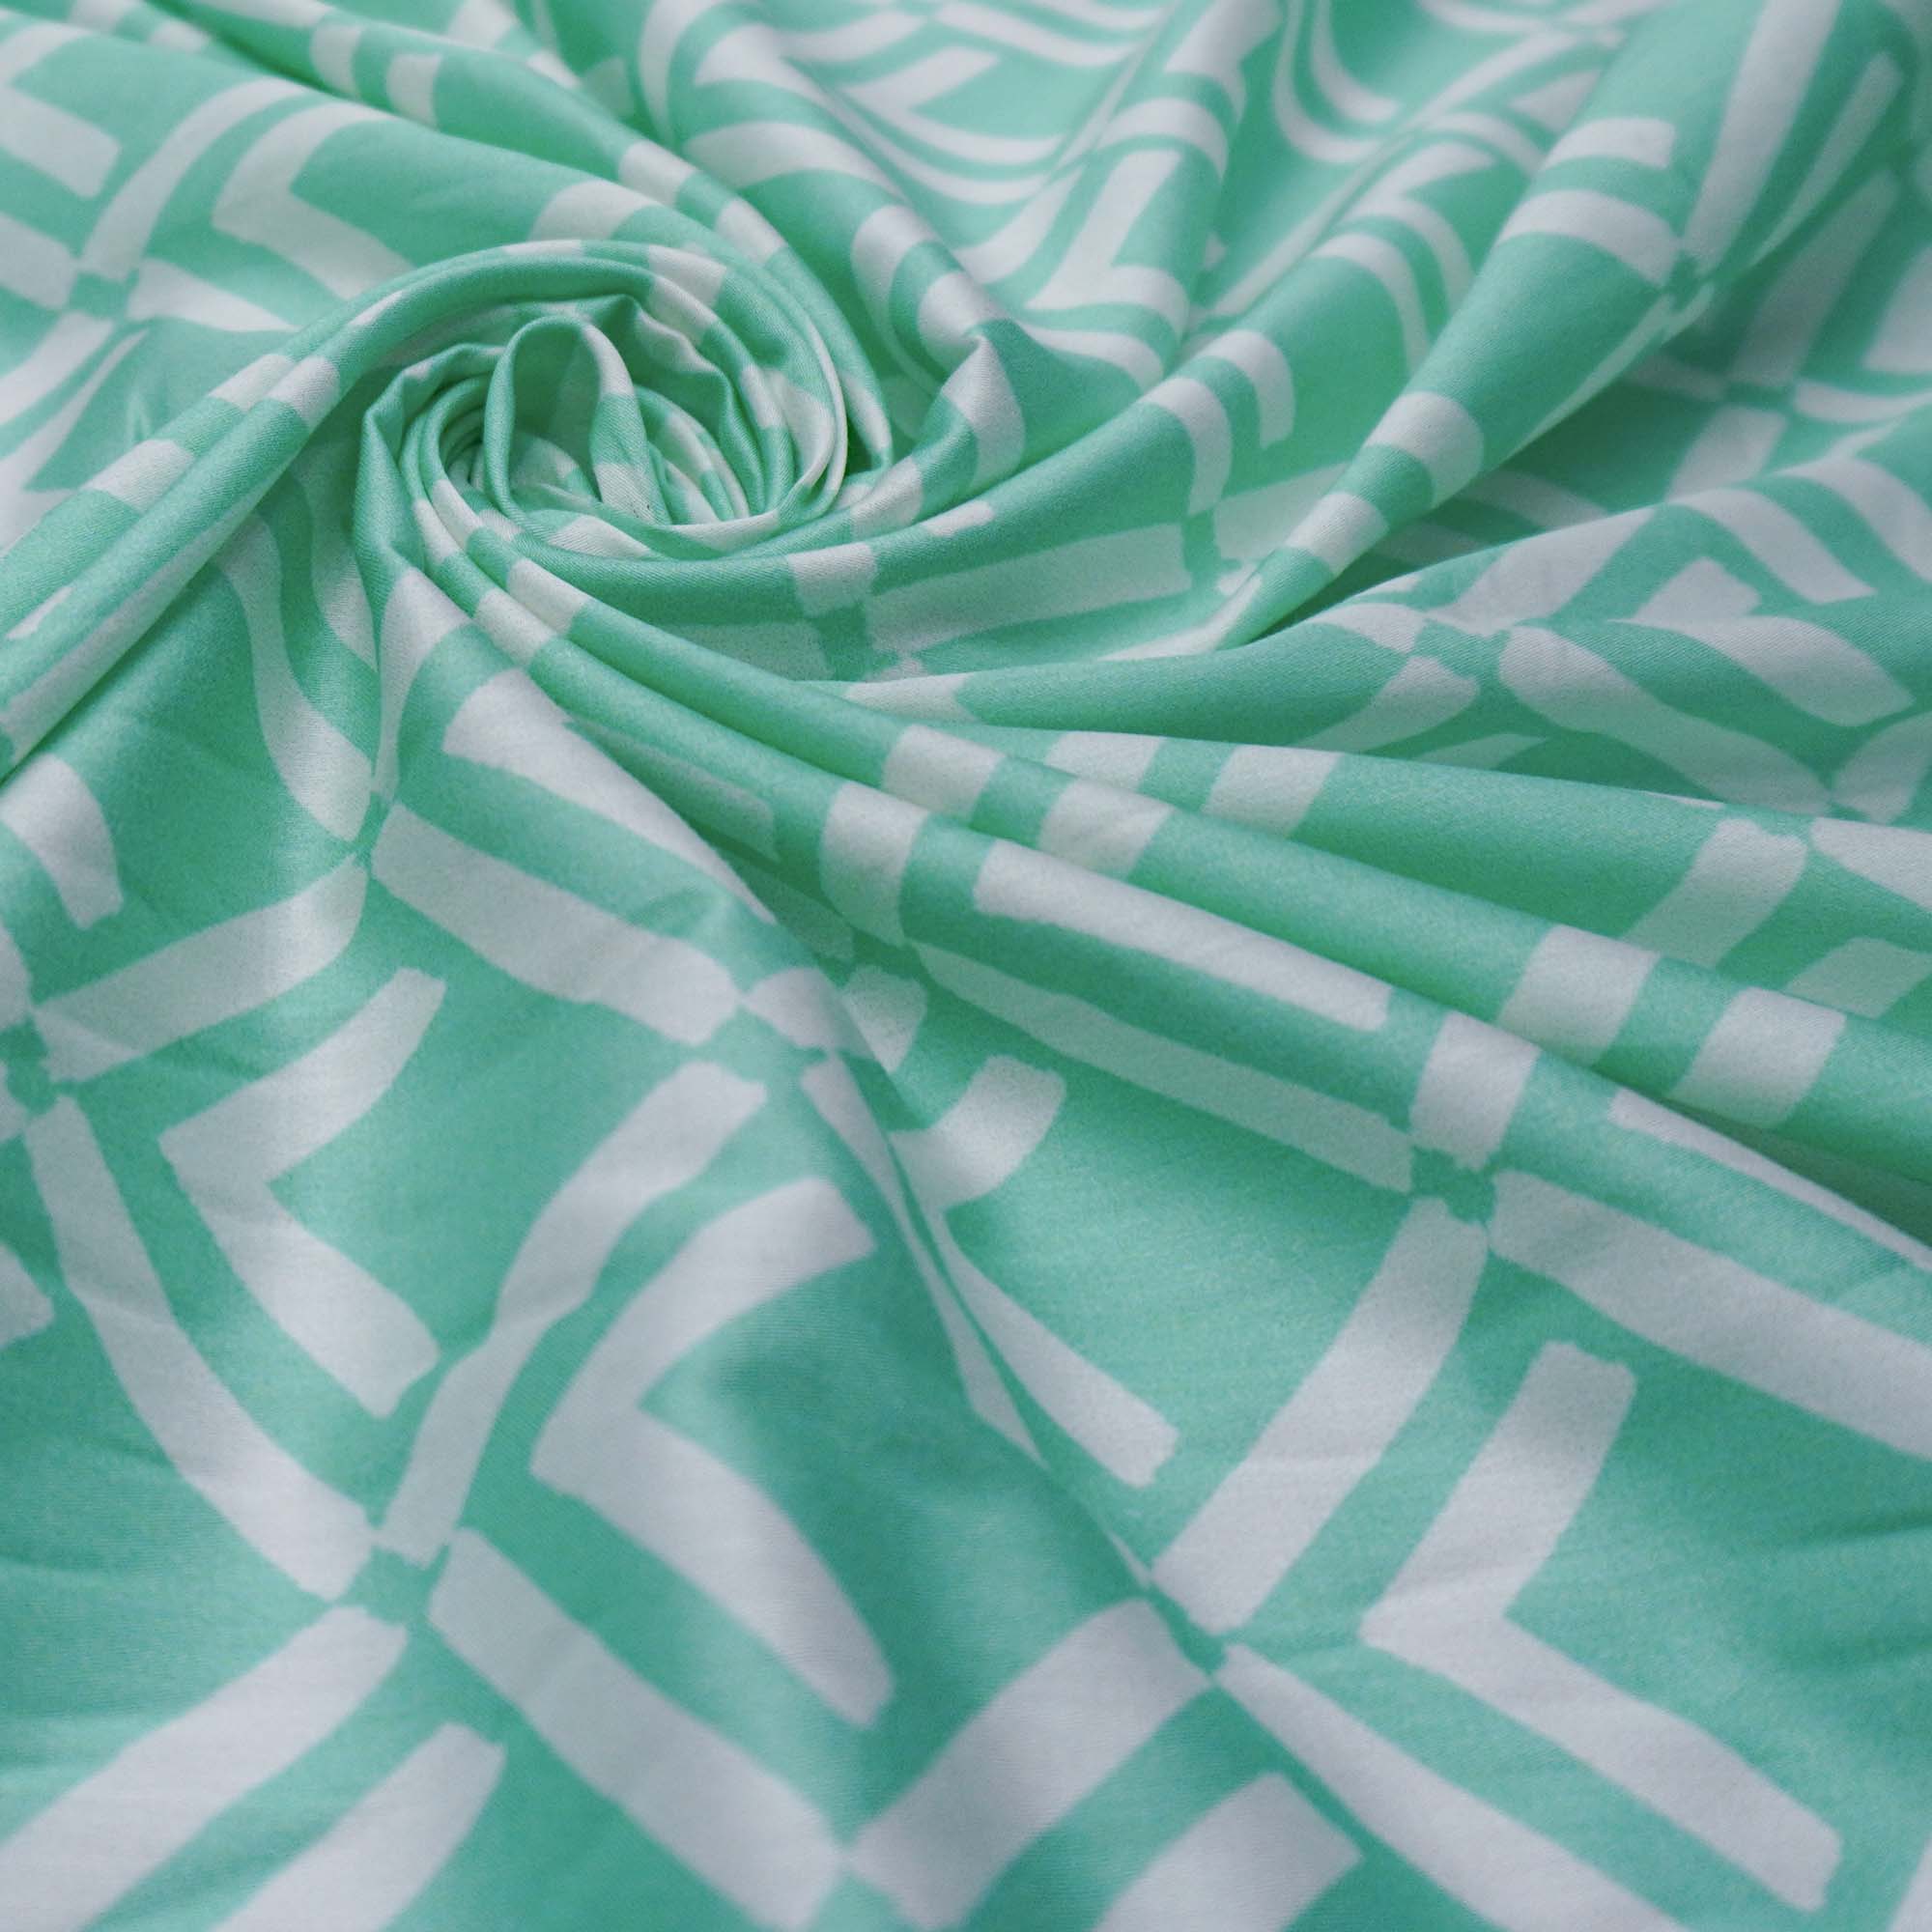 Tecido viscose estampado verde tiffany (tecido italiano legítimo)